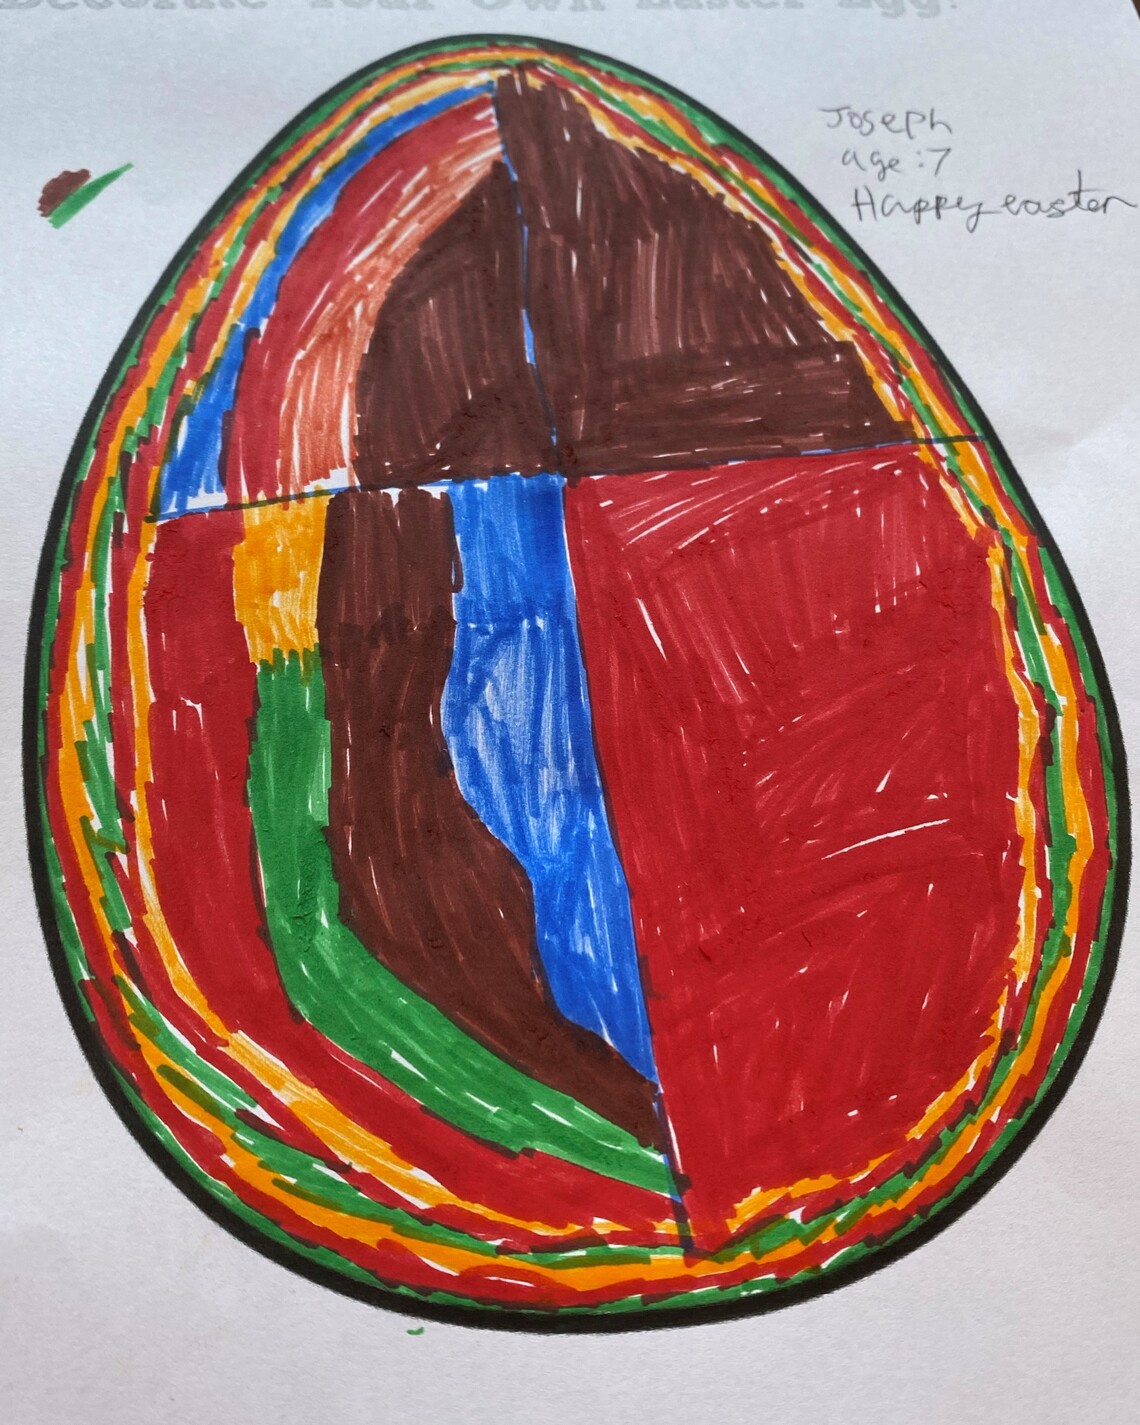 2020 Easter Egg Colouring Runner Up 1